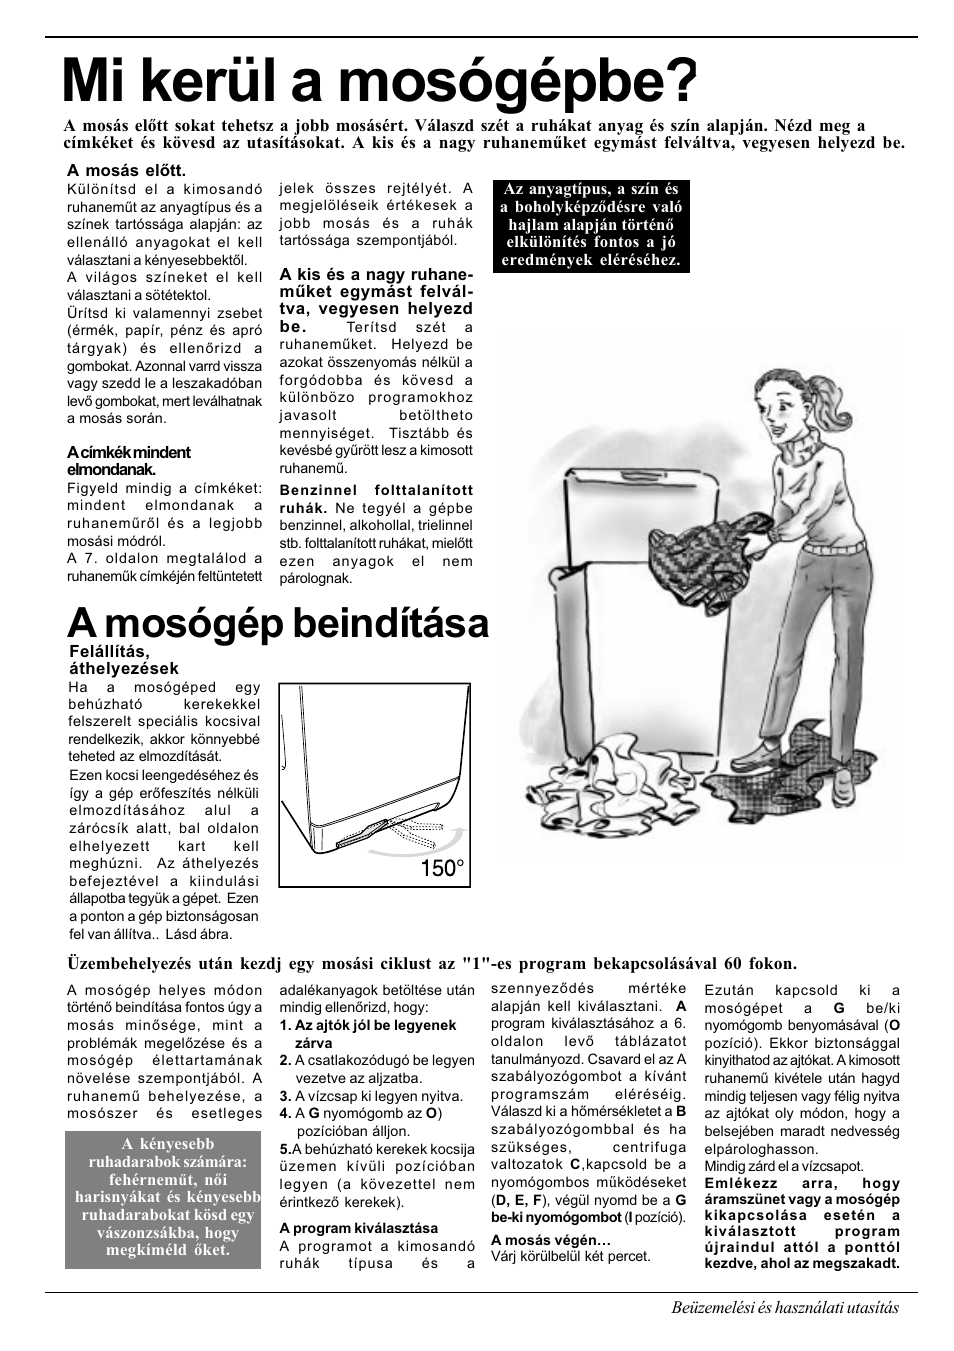 Mi kerül a mosógépbe, A mosógép beindítása | Ariston AT 84 User Manual |  Page 53 / 80